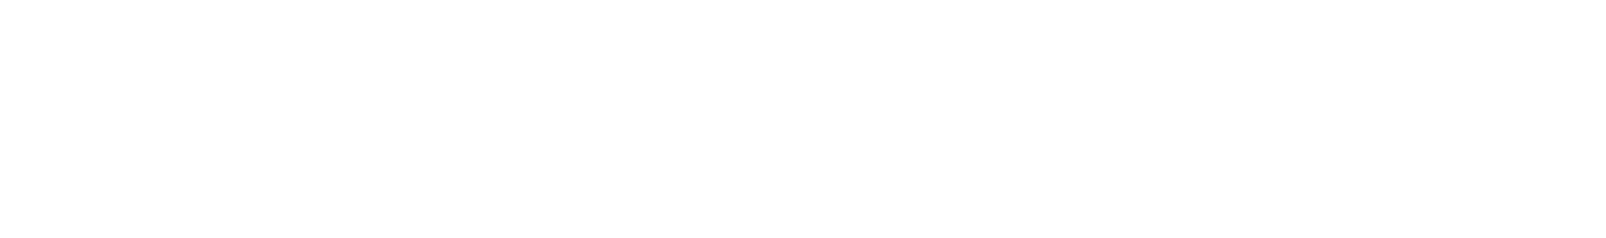 Enovix logo grand pour les fonds sombres (PNG transparent)